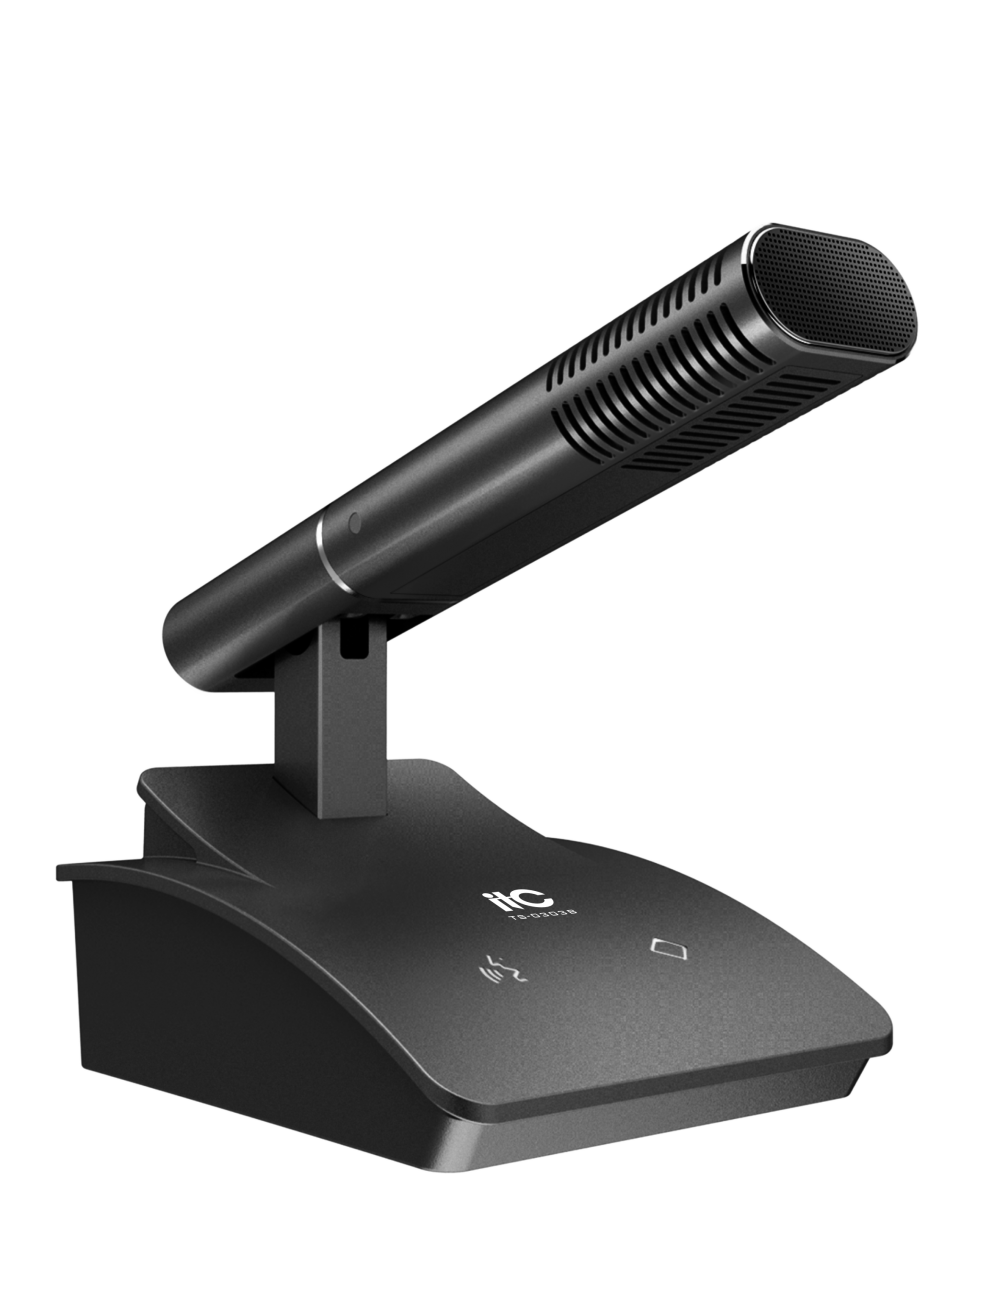 ITC TS-0303B микрофон председателя, чёрный цвет